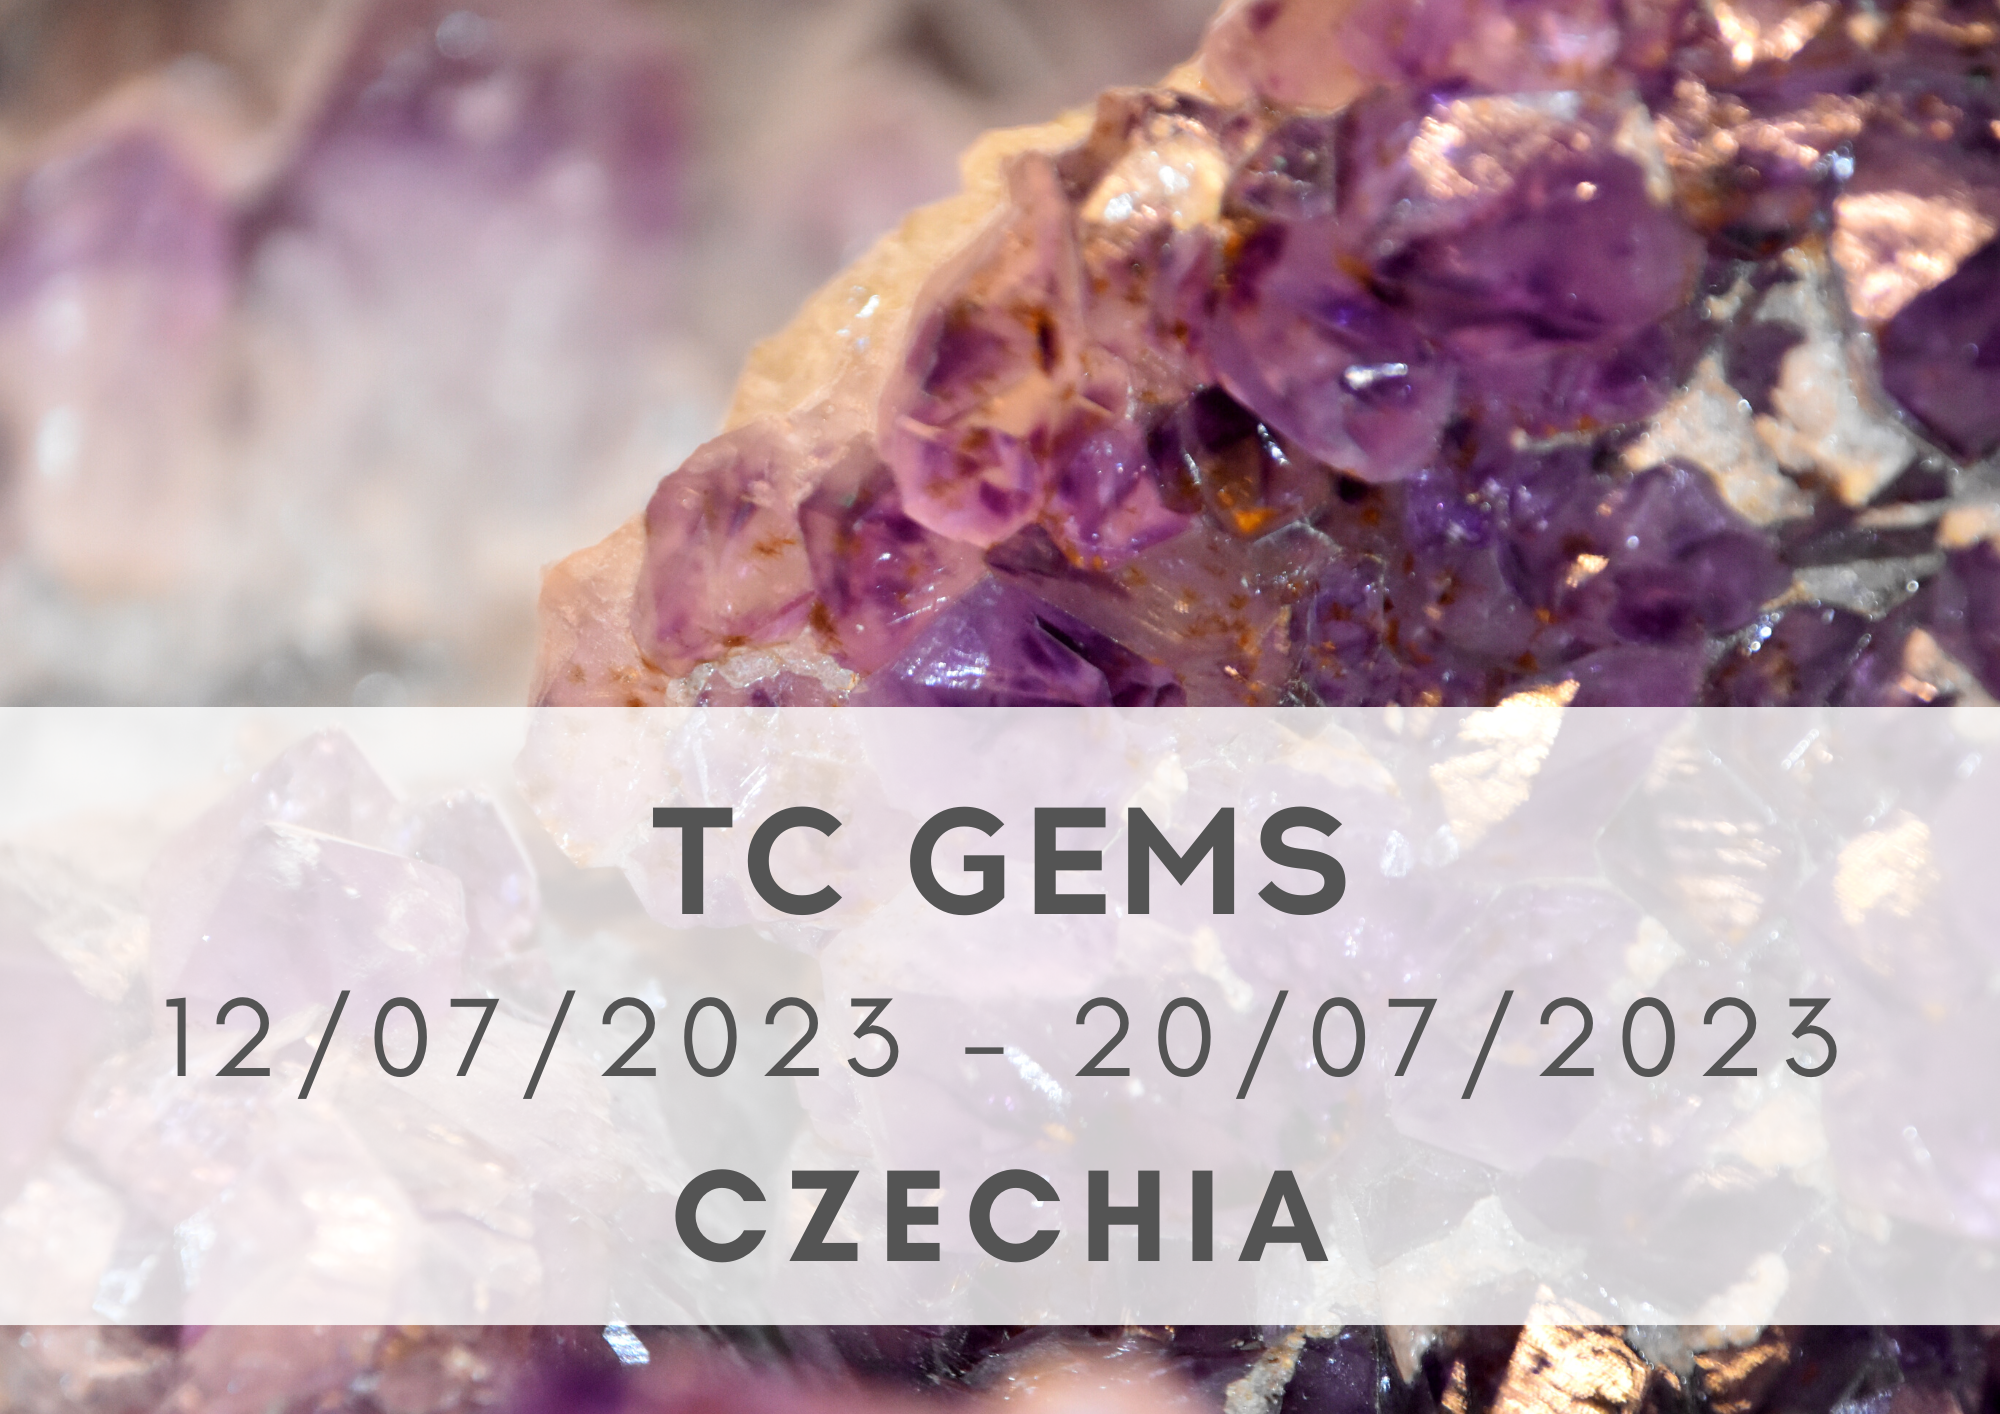 TC GEMS, 12-20/07/2023, Czechia